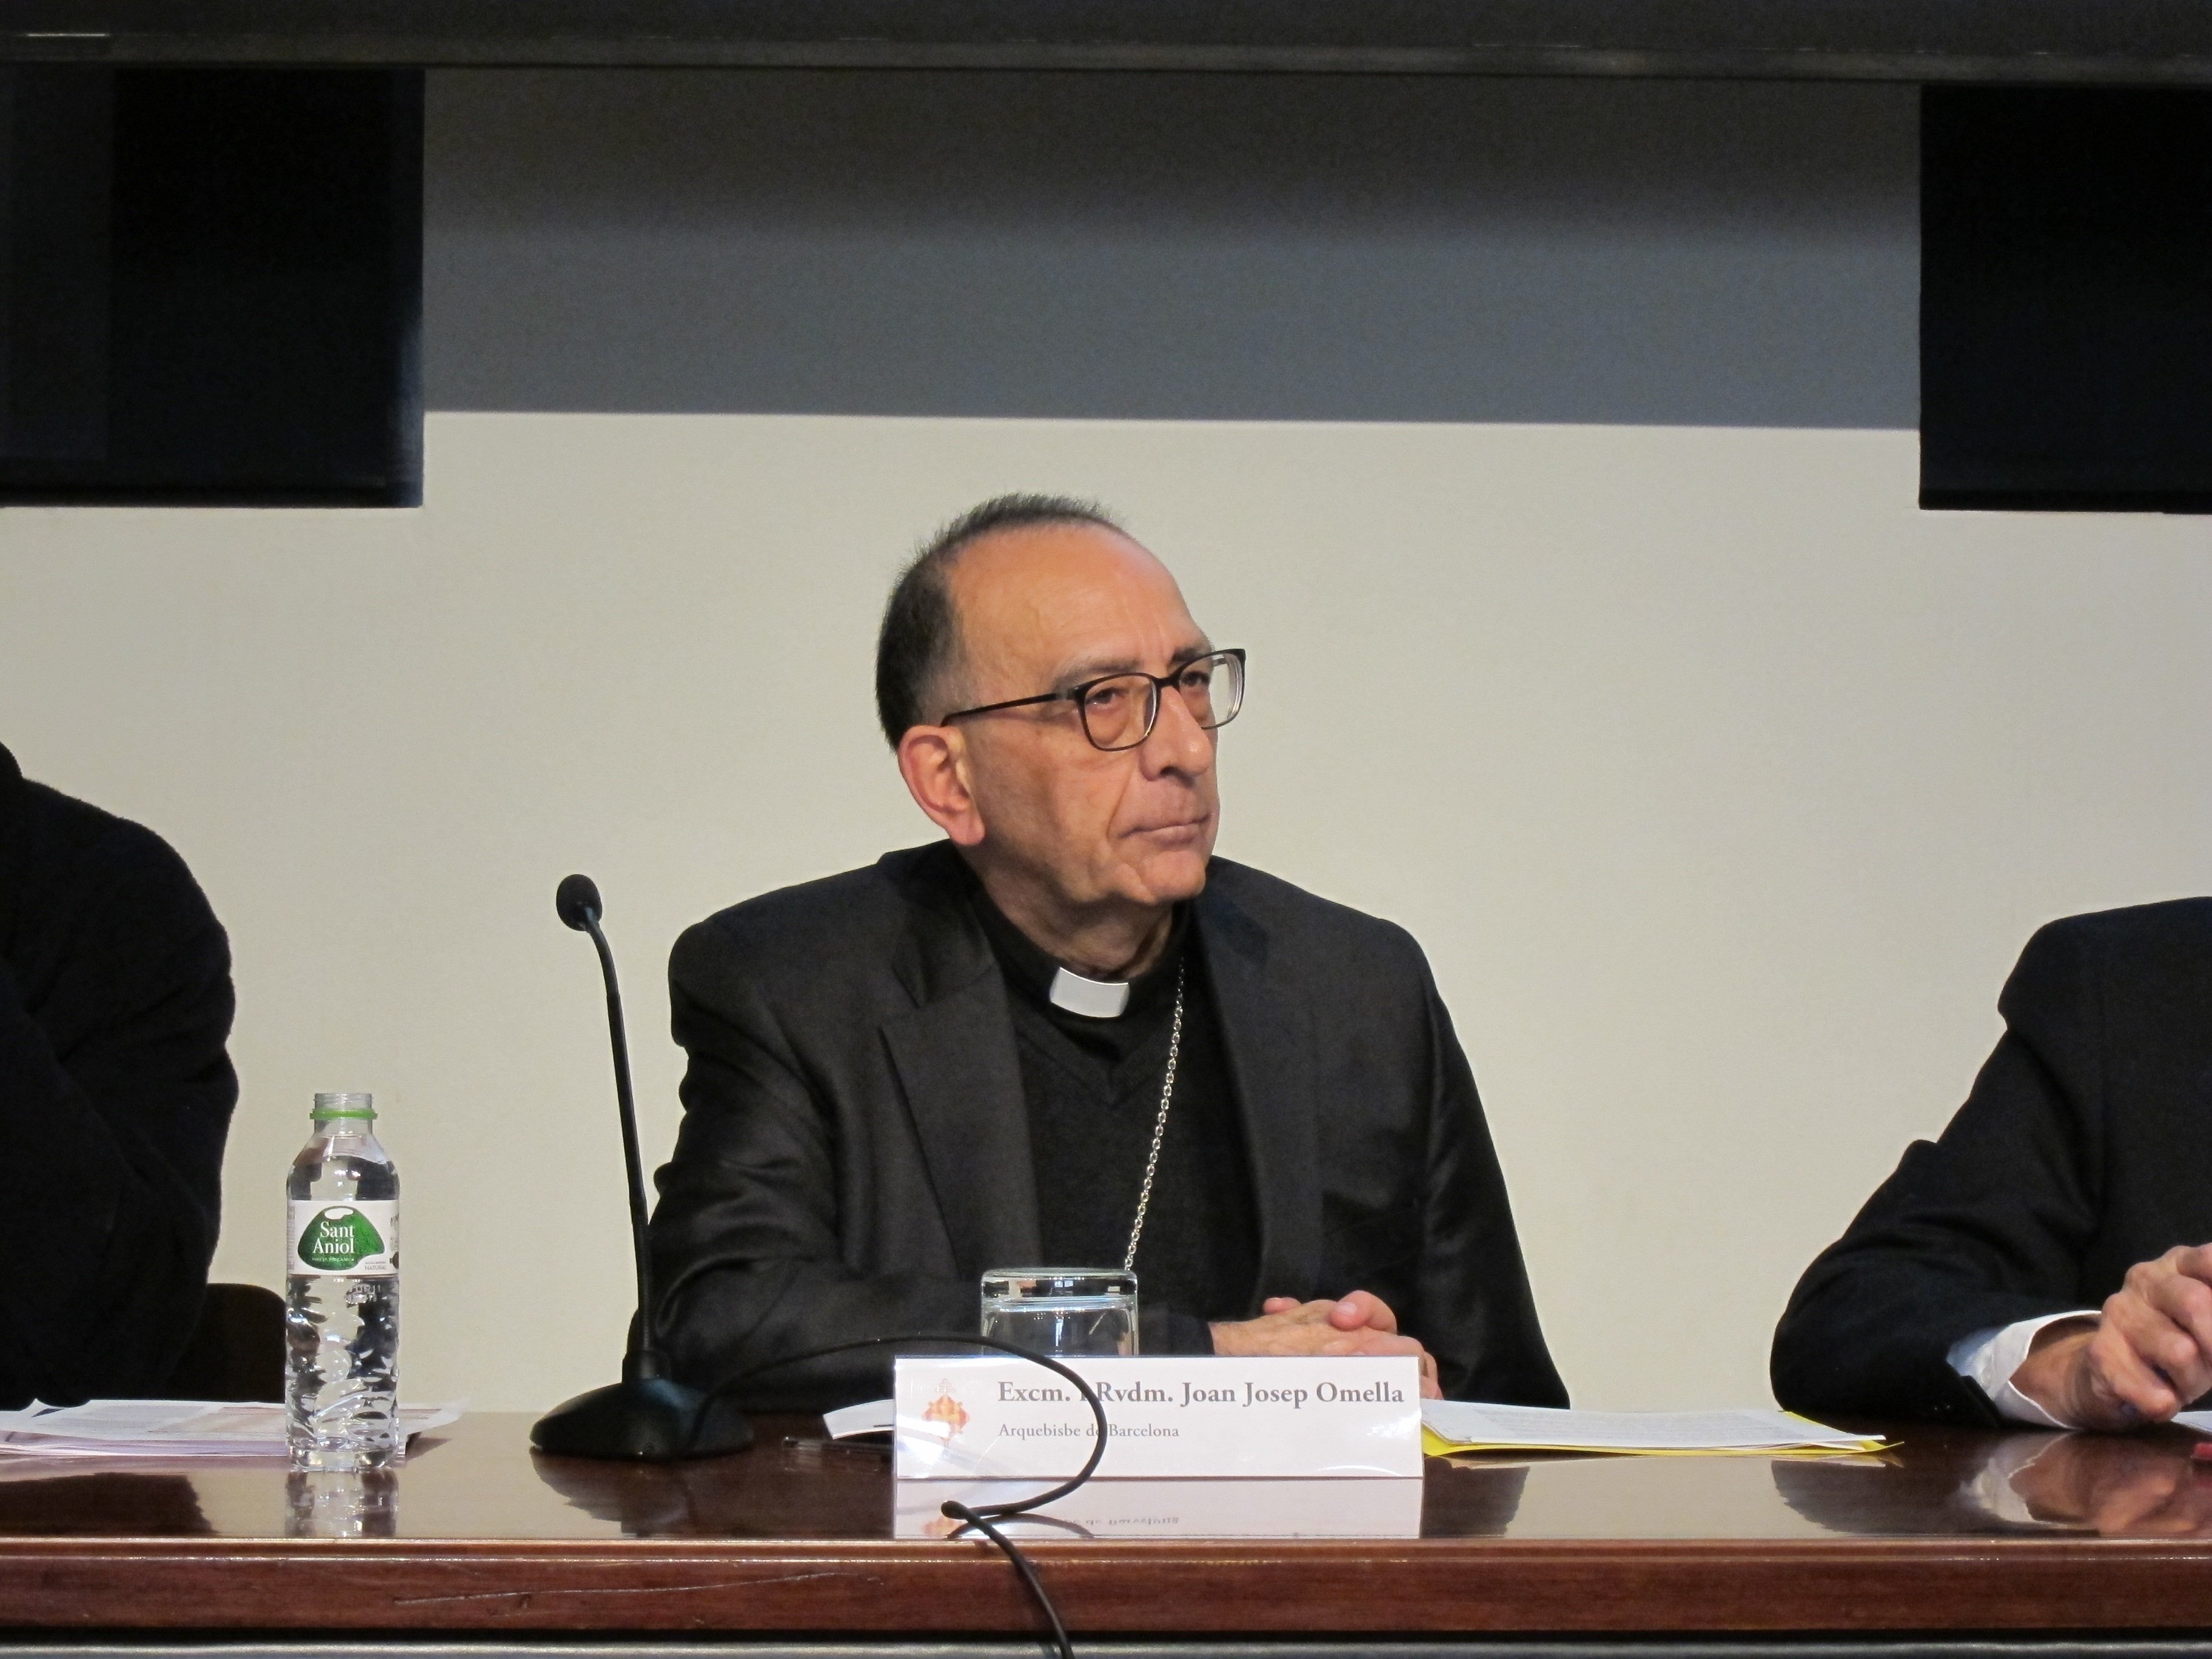 Los obispos españoles escogen presidente: Omella y Cañizares, con posibilidades